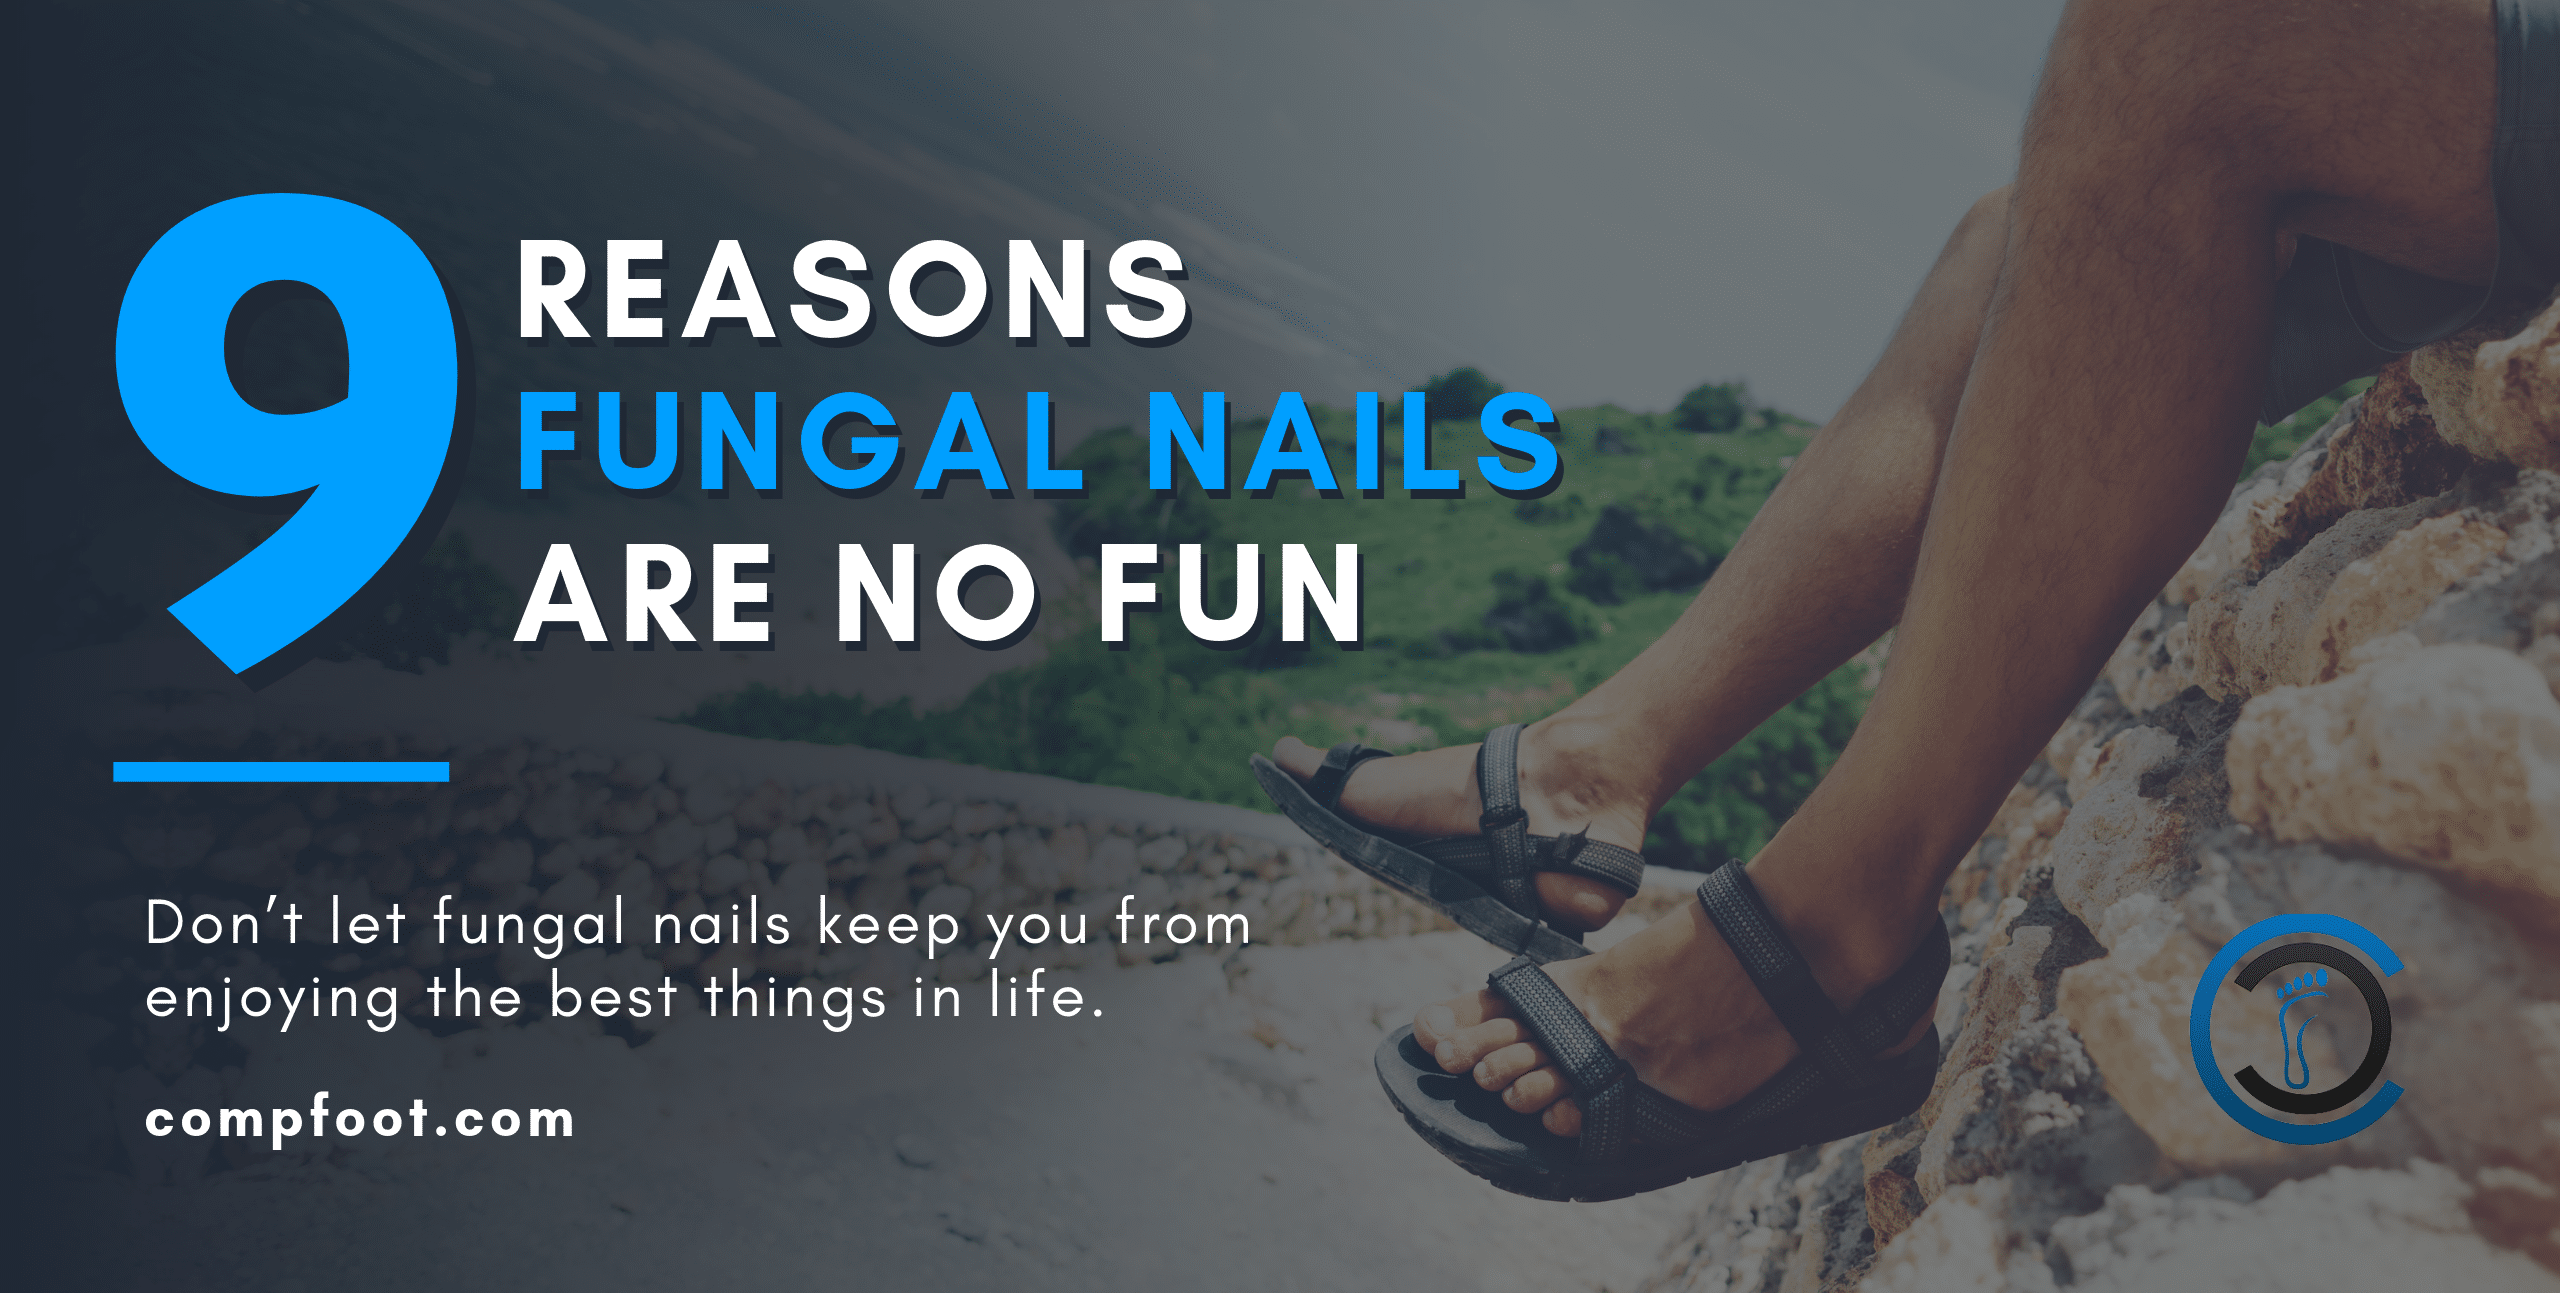 9 Reasons Fungal Nails Are No Fun